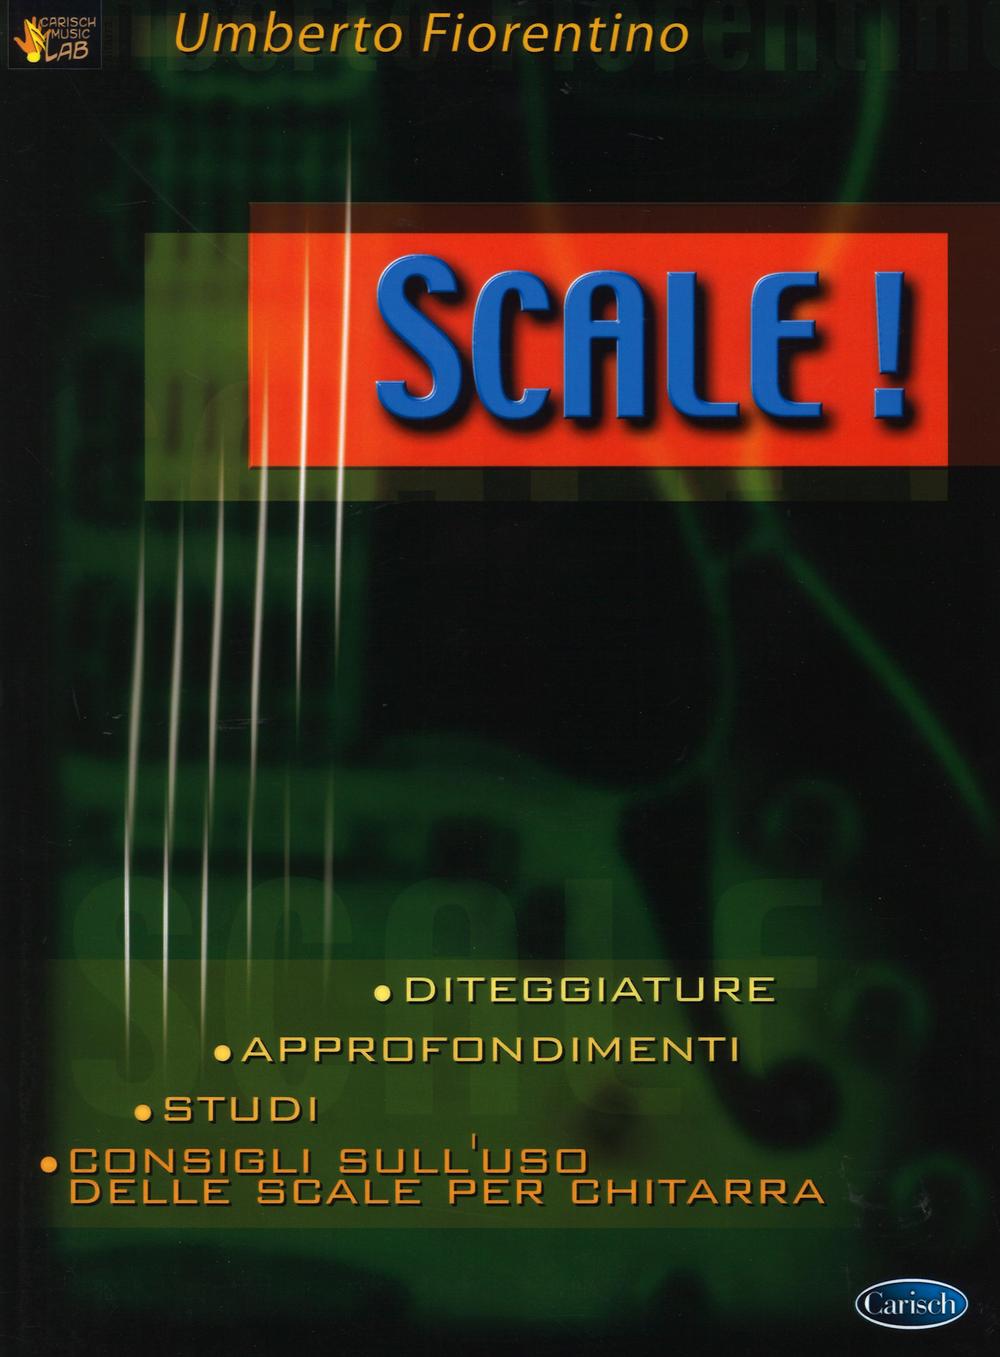 Könyv Scale! Umberto Fiorentino